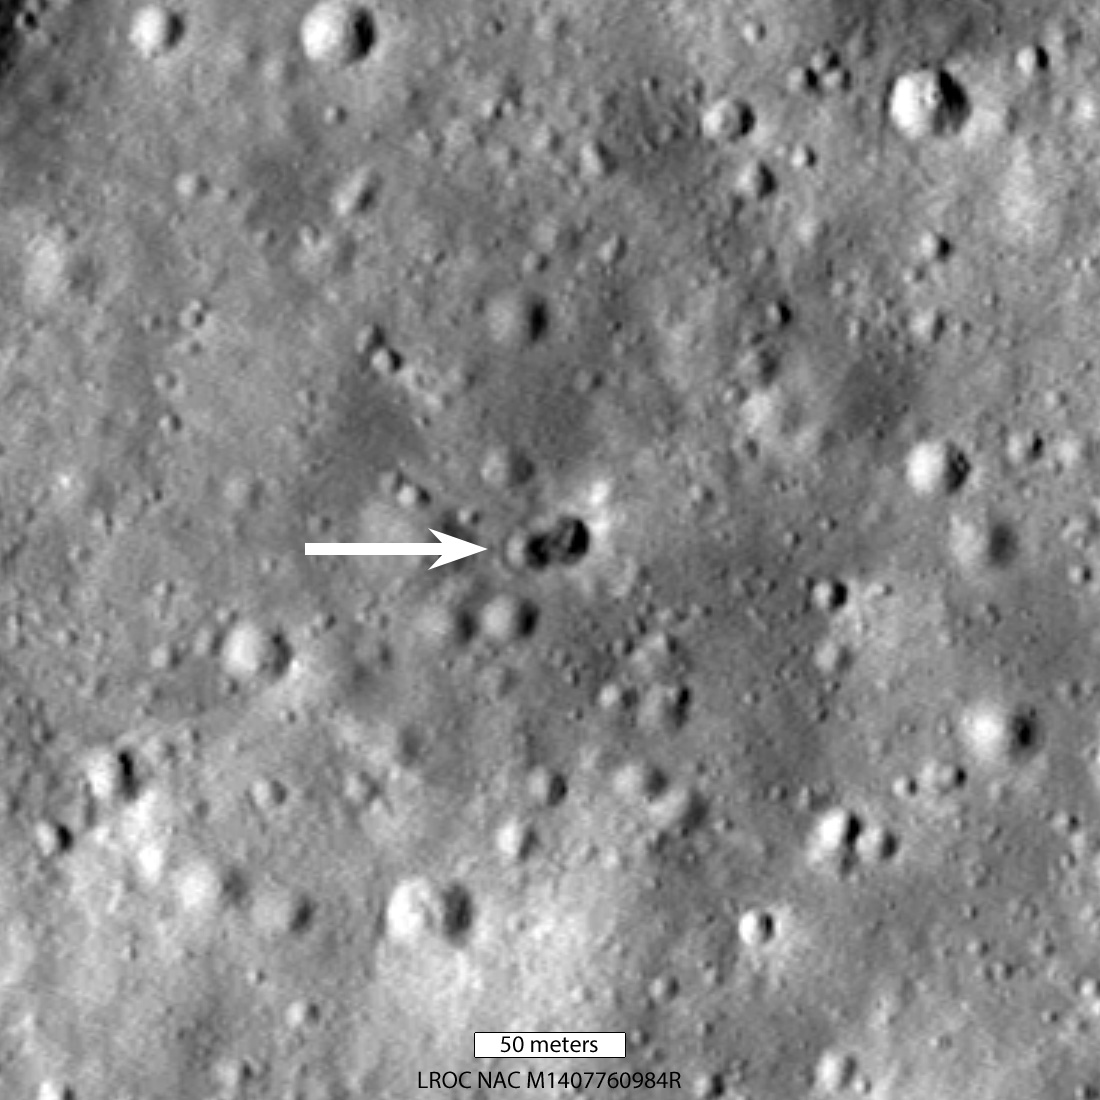 Die Überreste einer Rakete sind nahe des Hertzsprung-Kraters auf dem Mond zu sehen.